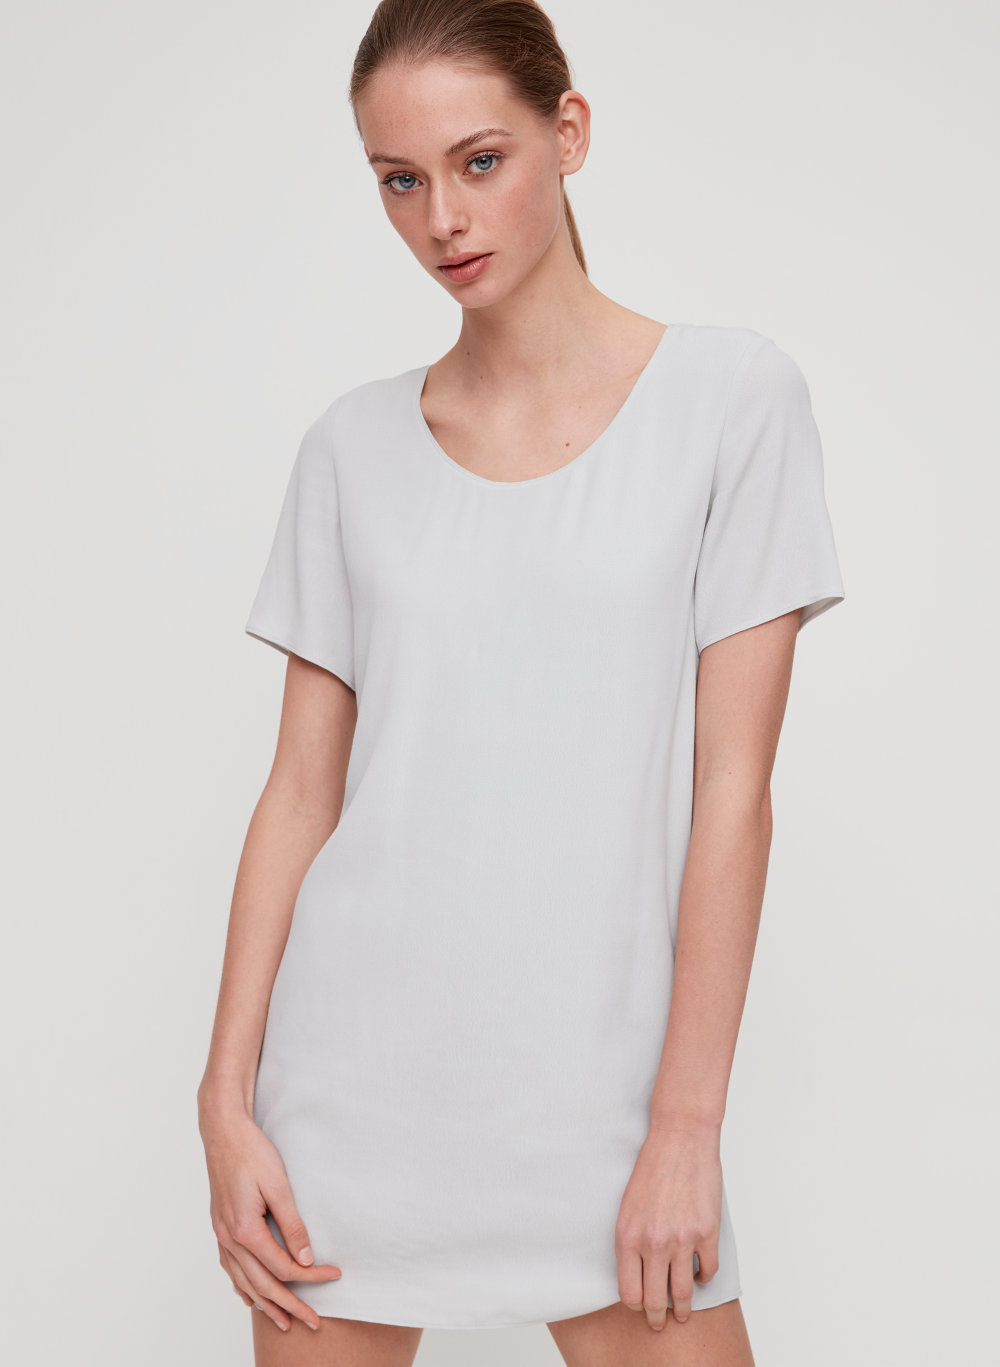 Aritzia T Shirt Dress Discount, 60% OFF ...